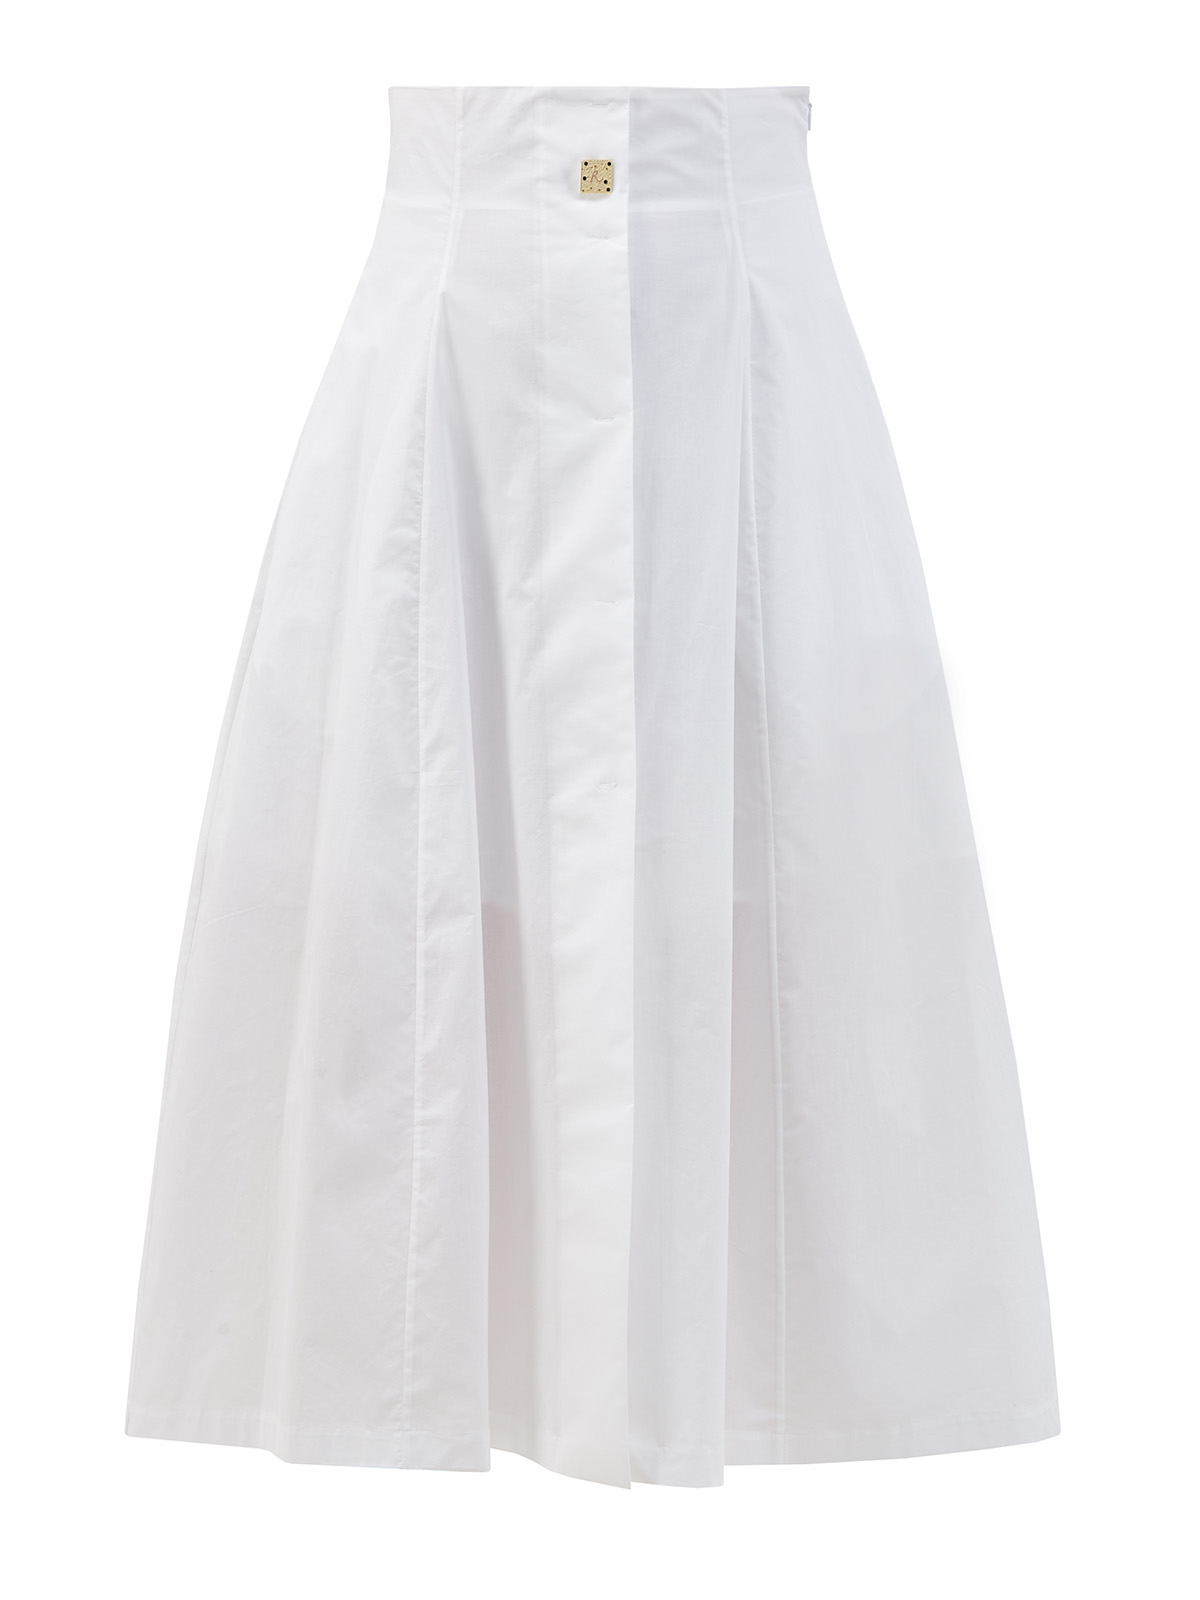 Белая юбка-плиссе с брошью ручной работы